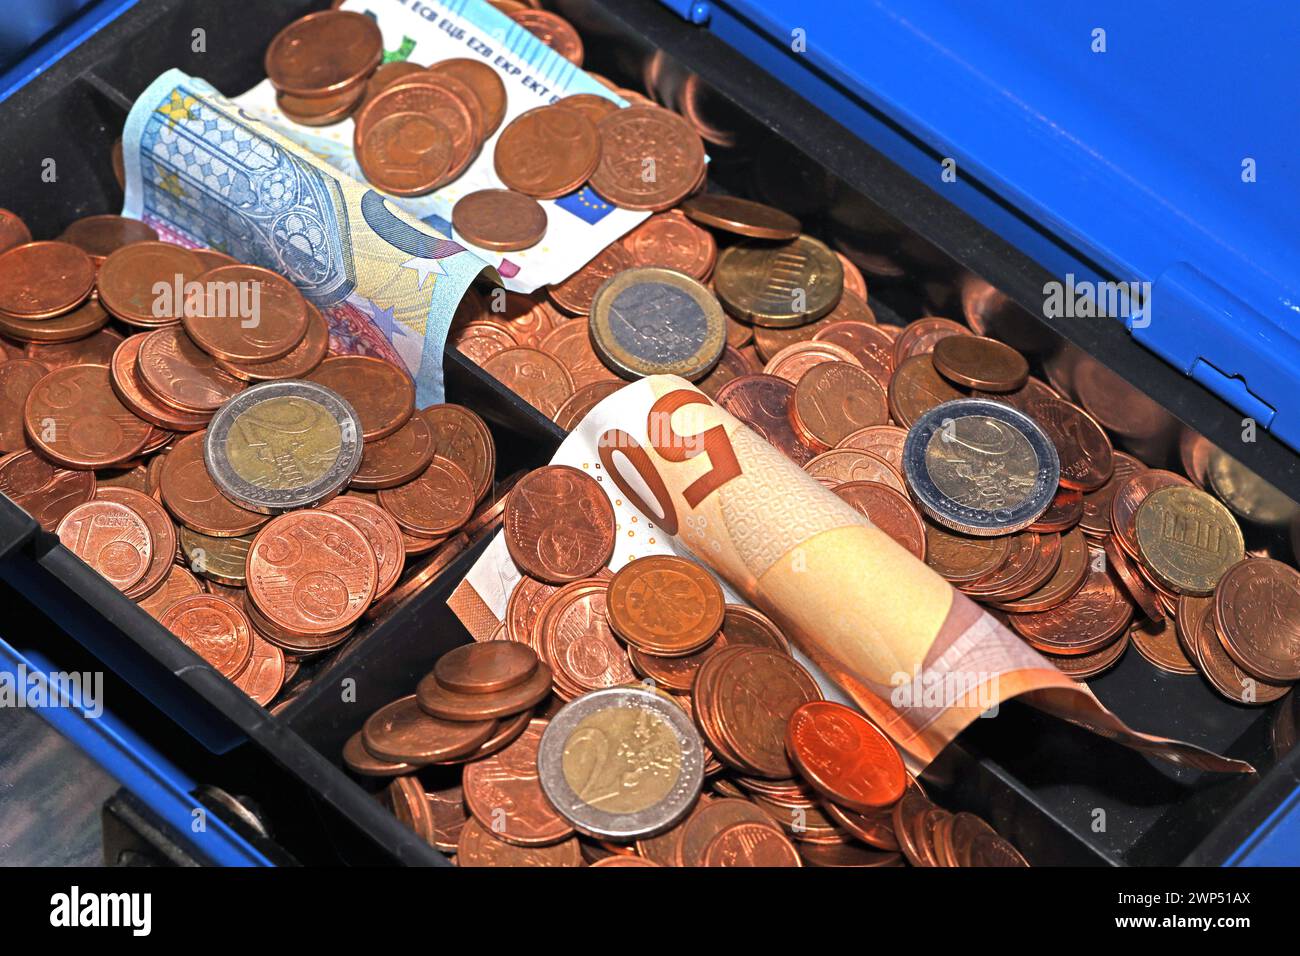 Aufbewahren von Bargeld Geldscheine und Centmünzen in einer blauen Geldkassette **** immagazzinamento di banconote e monete in contanti in una cassa blu Foto Stock